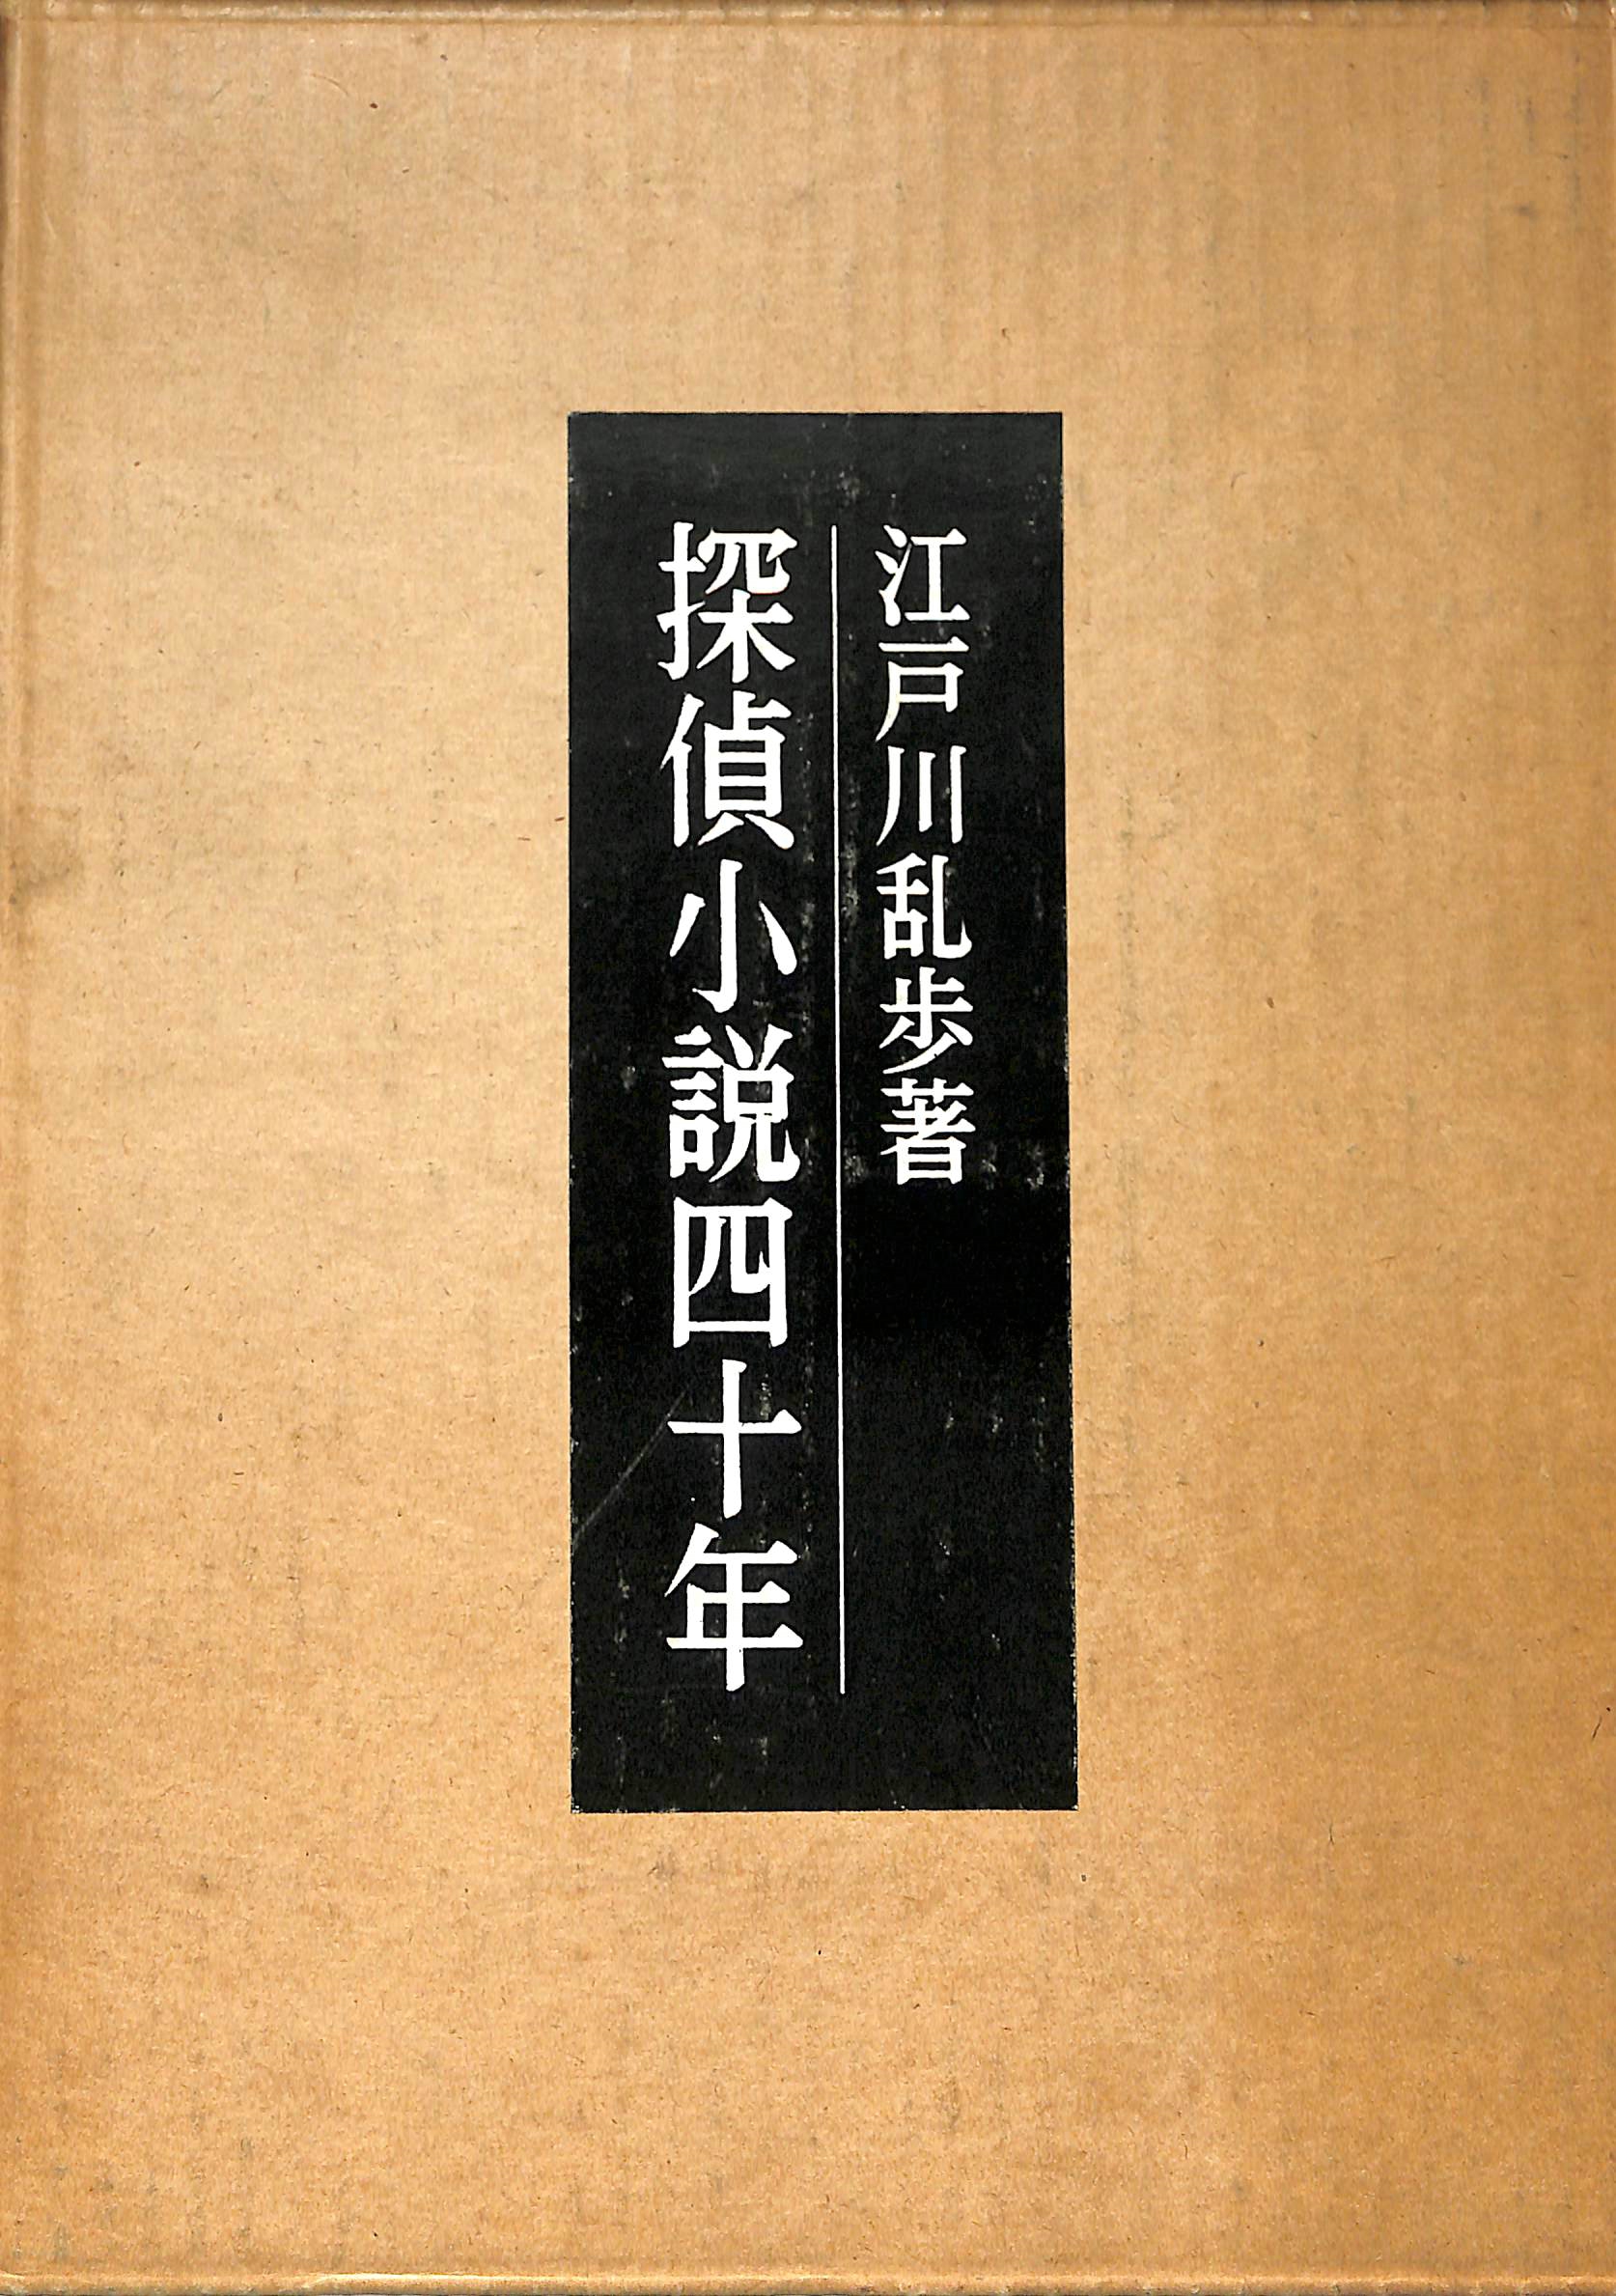 探偵小説40年 江戸川乱歩 | 古本よみた屋 おじいさんの本、買います。